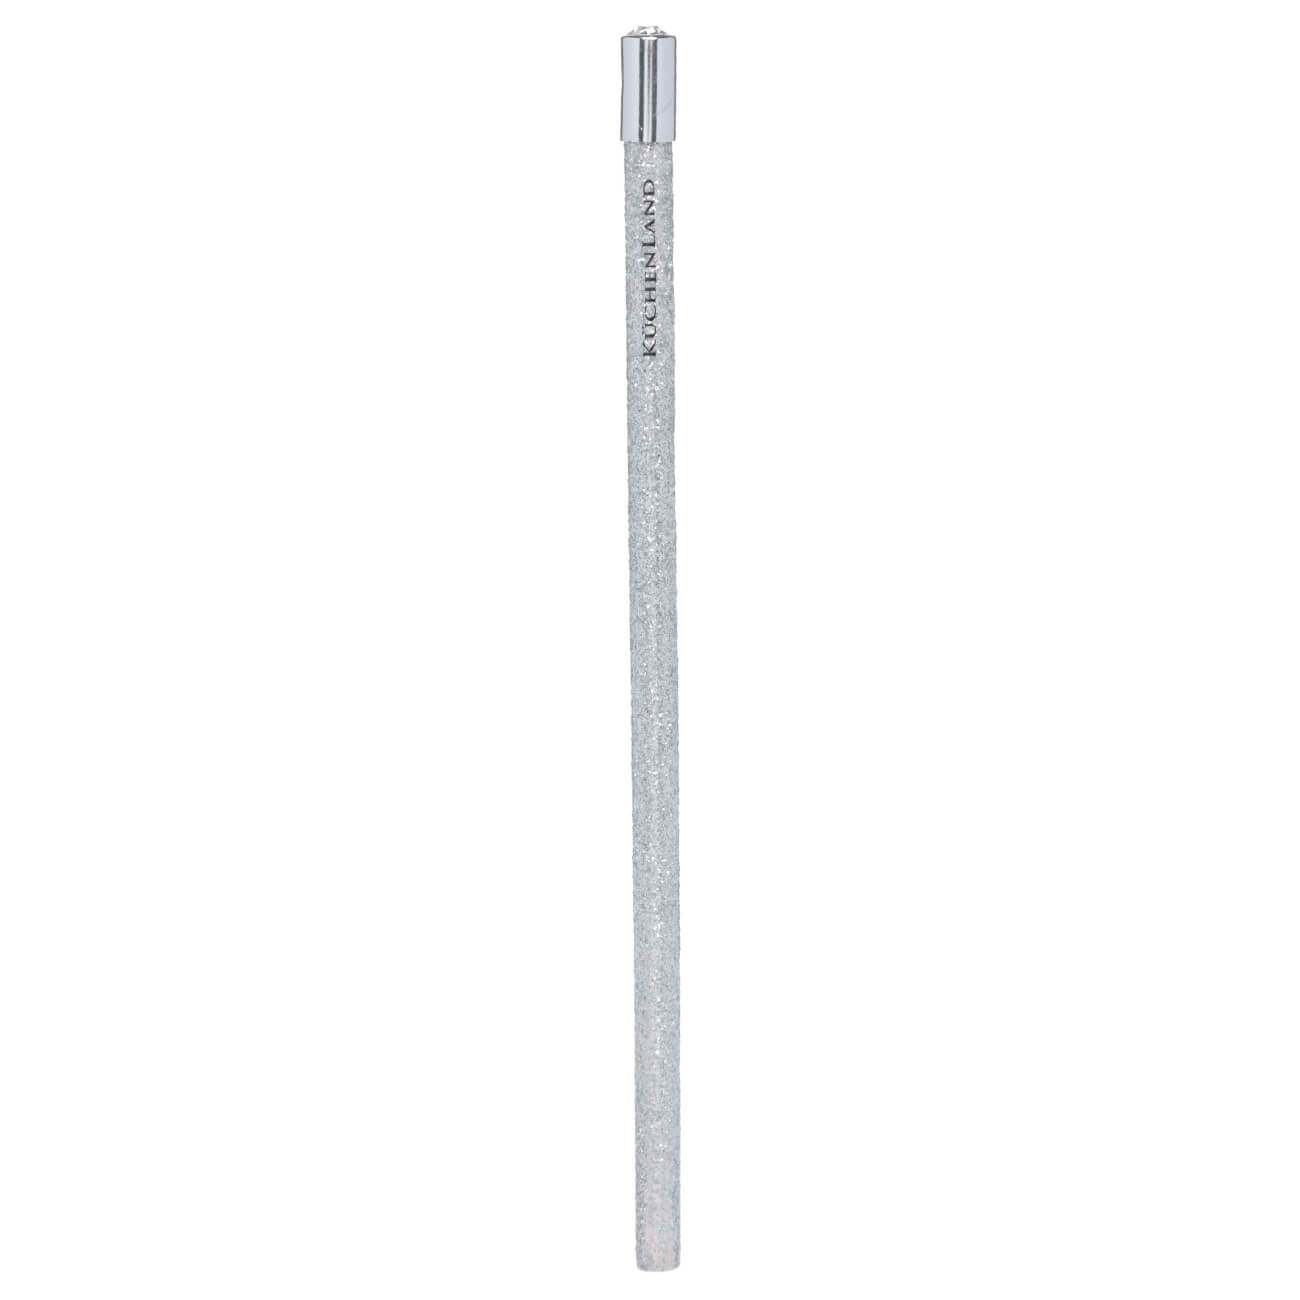 Карандаш, 18 см, чернографитный, серебристый, Draw sparcle карандаш керами 25x1 2 см серебристый